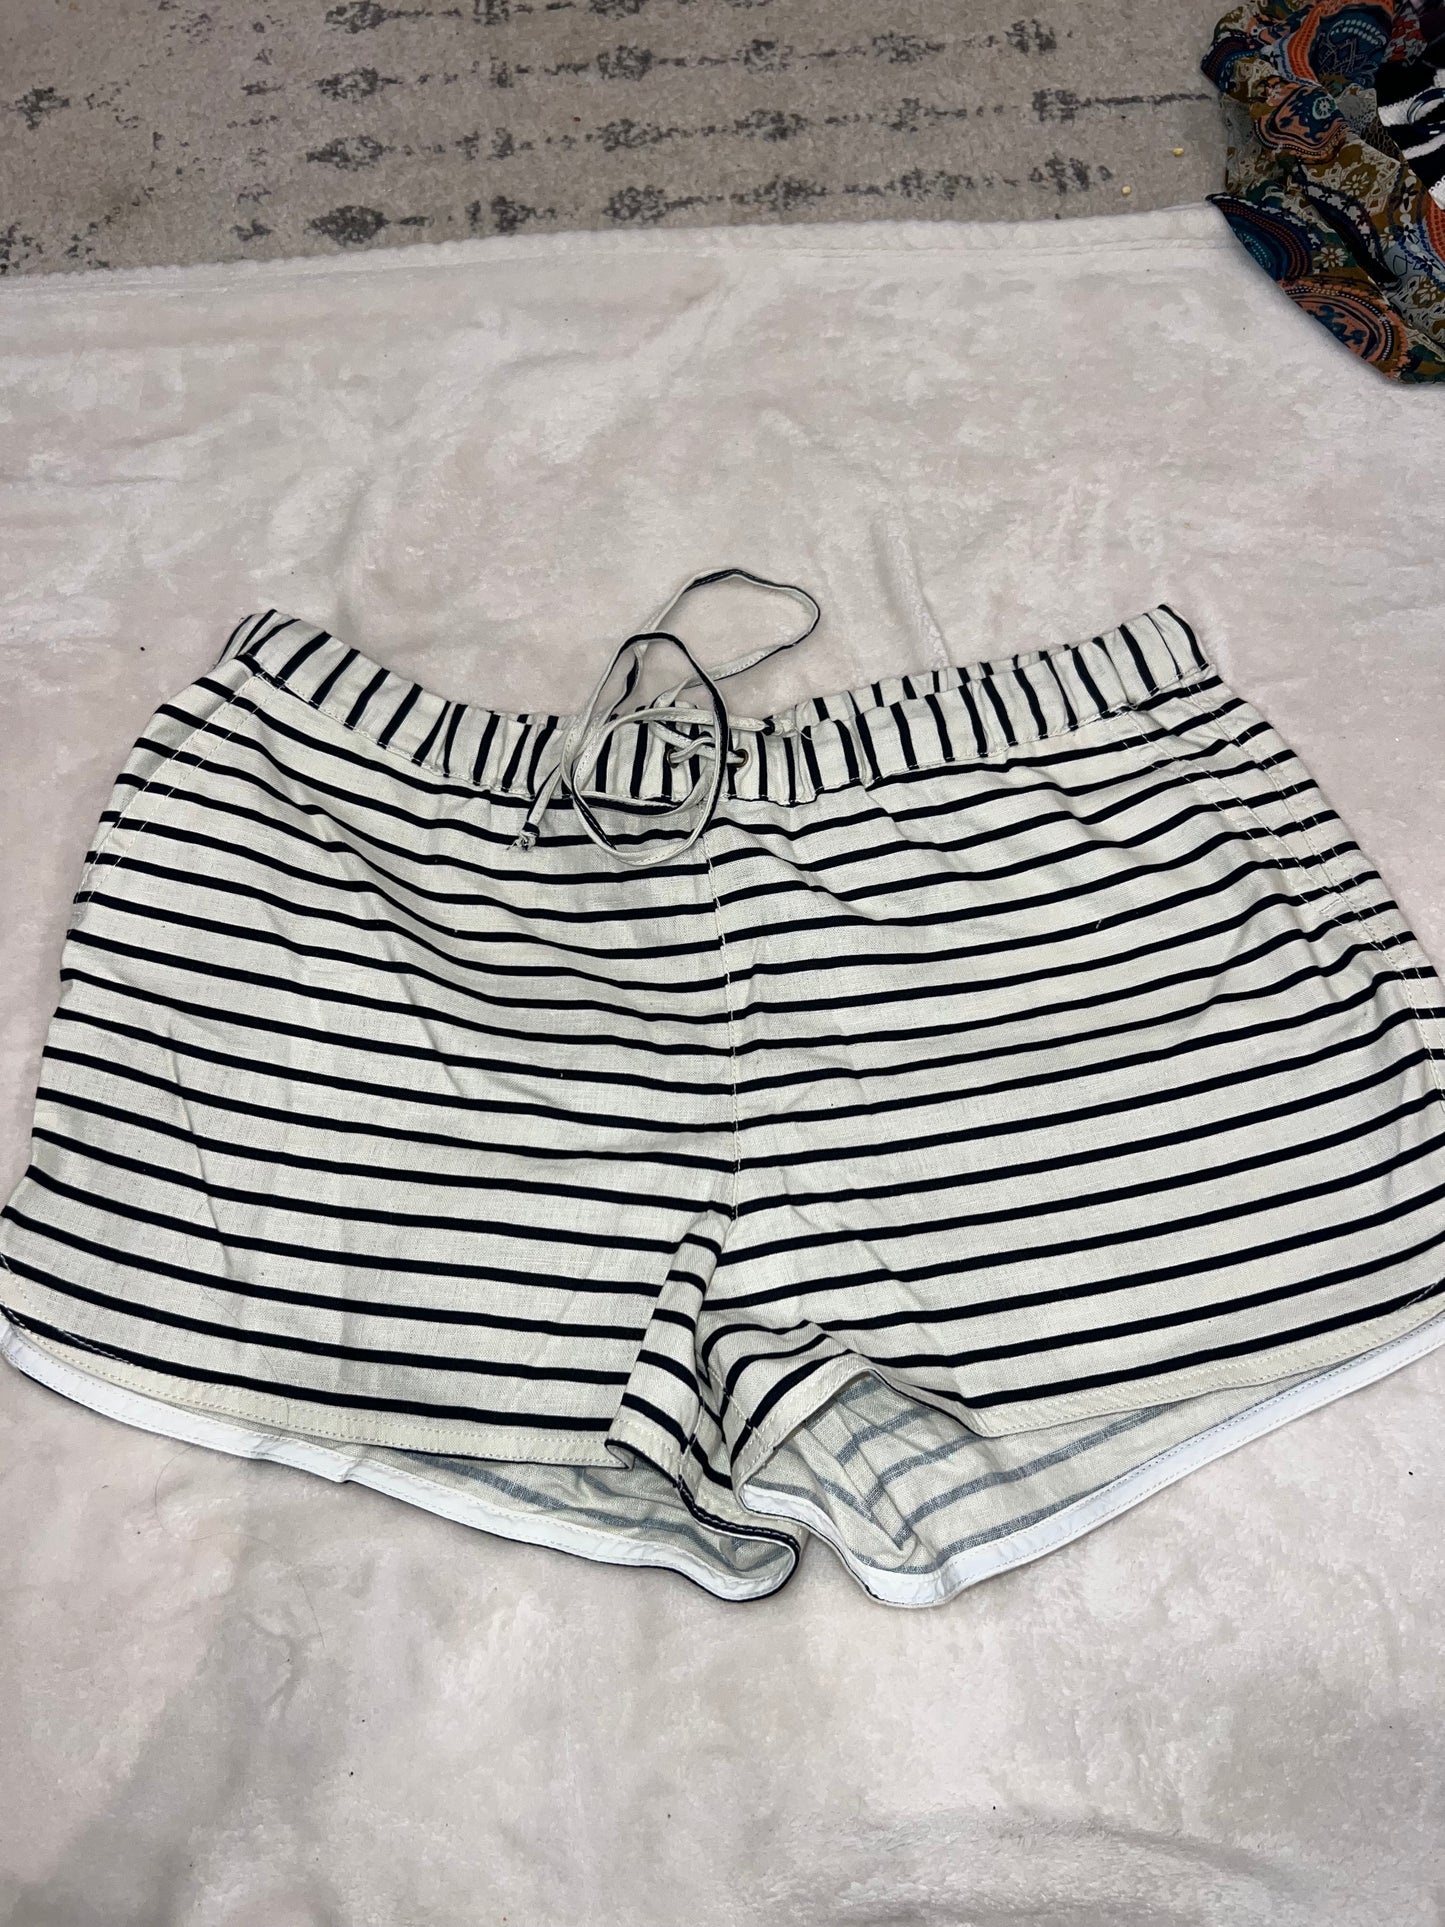 Womens XL jcrew linen shorts, navy and cream